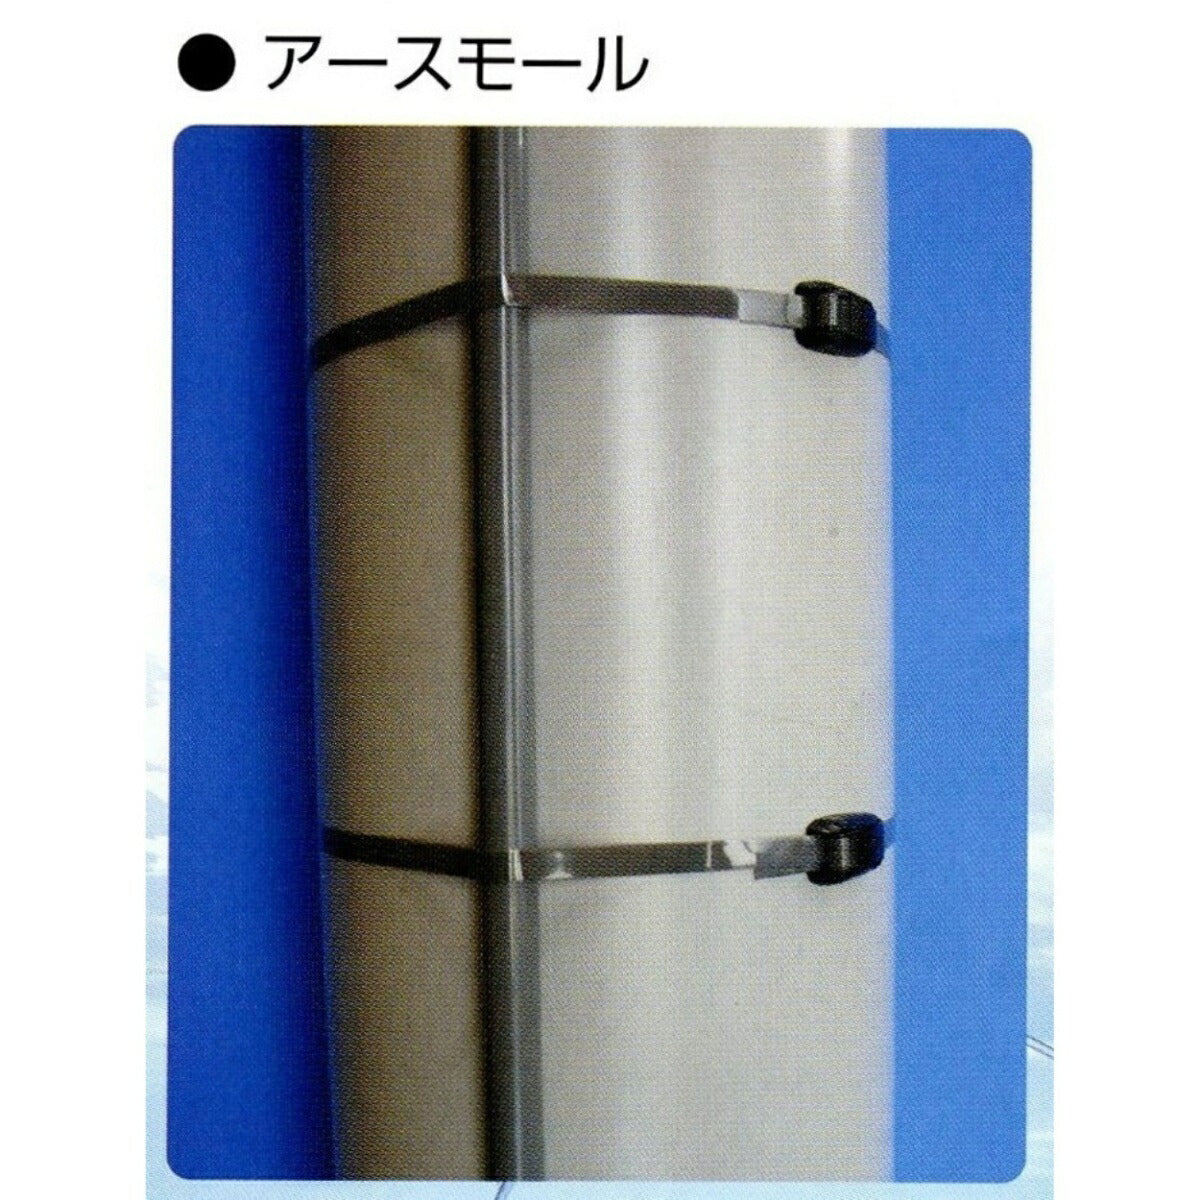 【スピード発送】プラスチックベルト 標識版 電柱 PLB-115 日本製 yh234